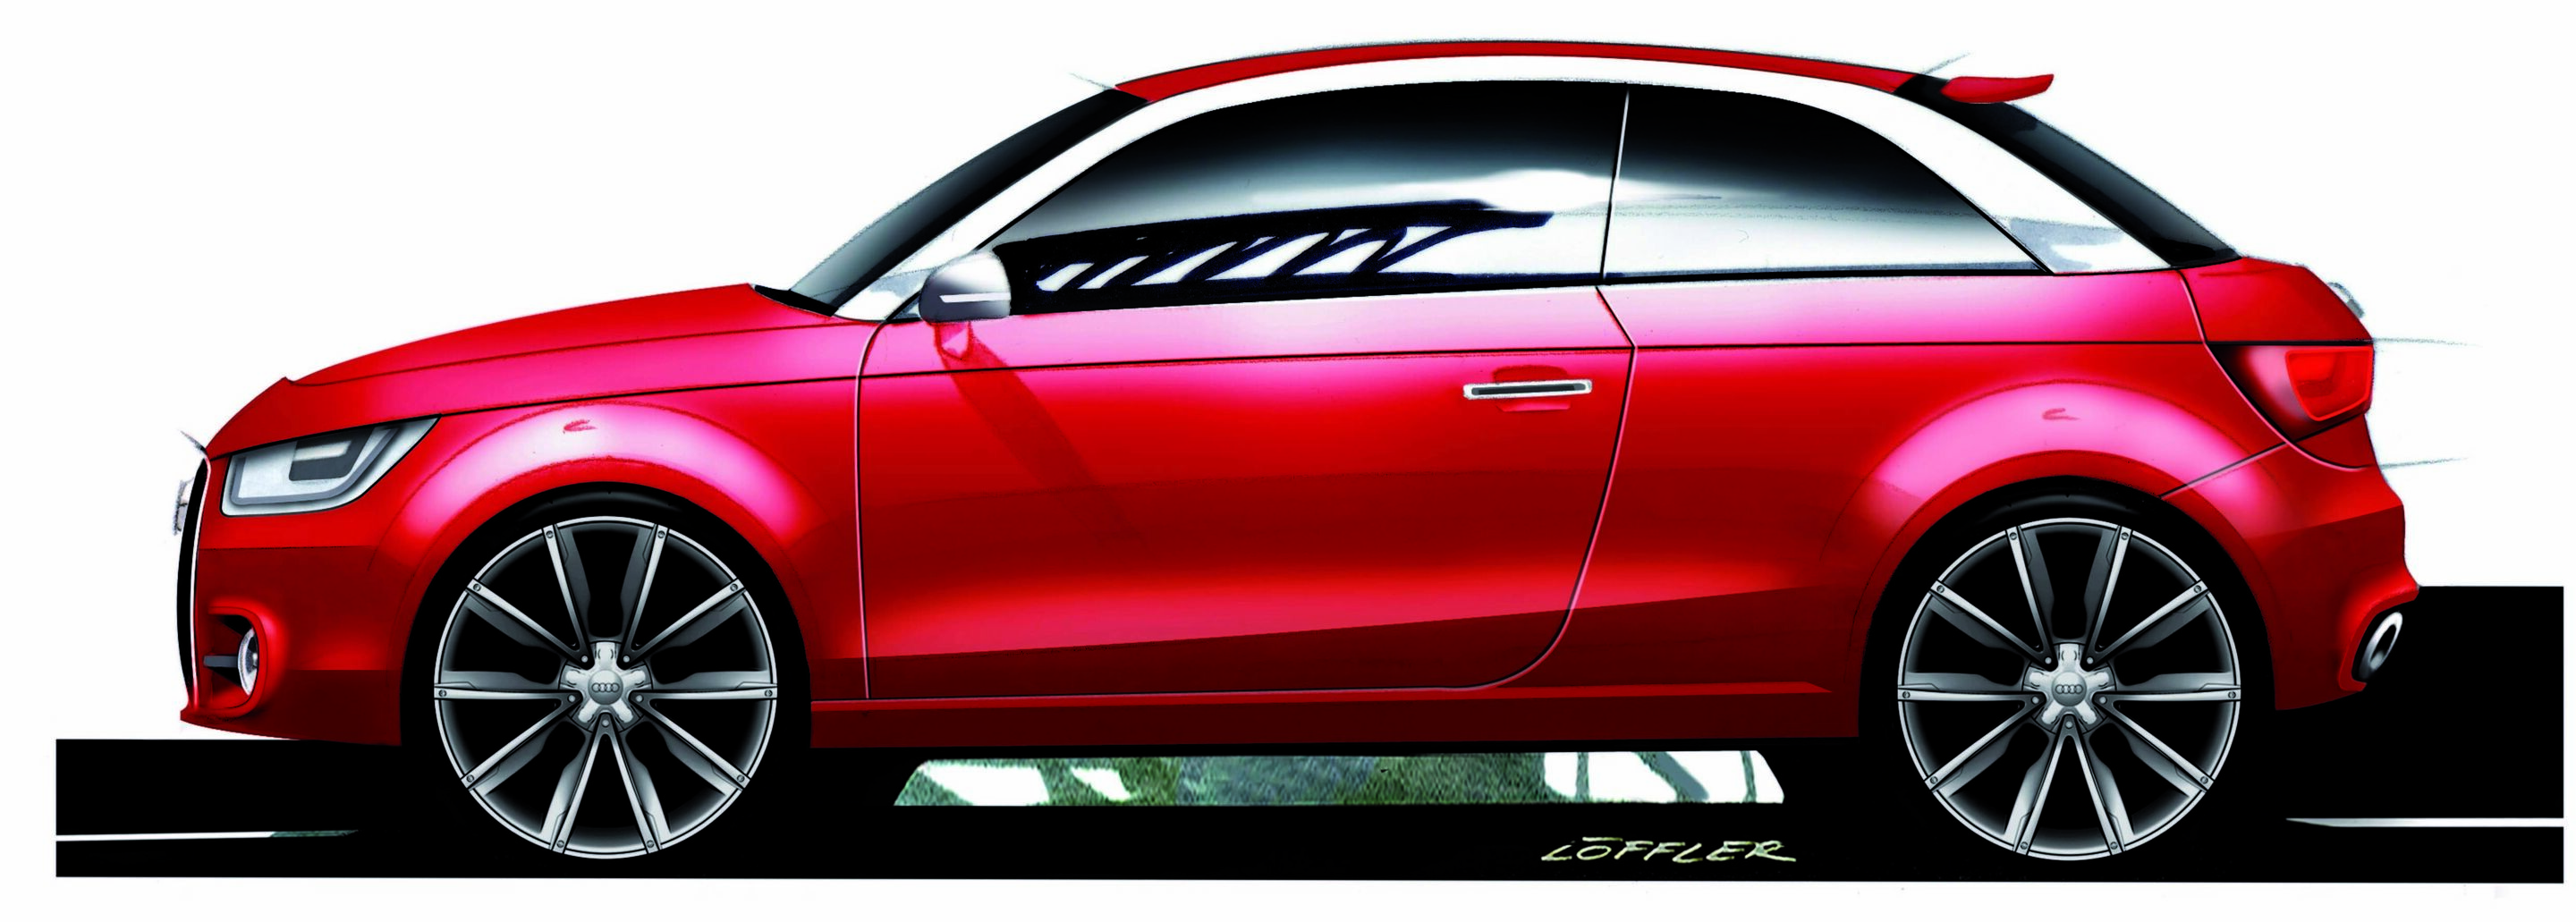 Audi A1 project quattro